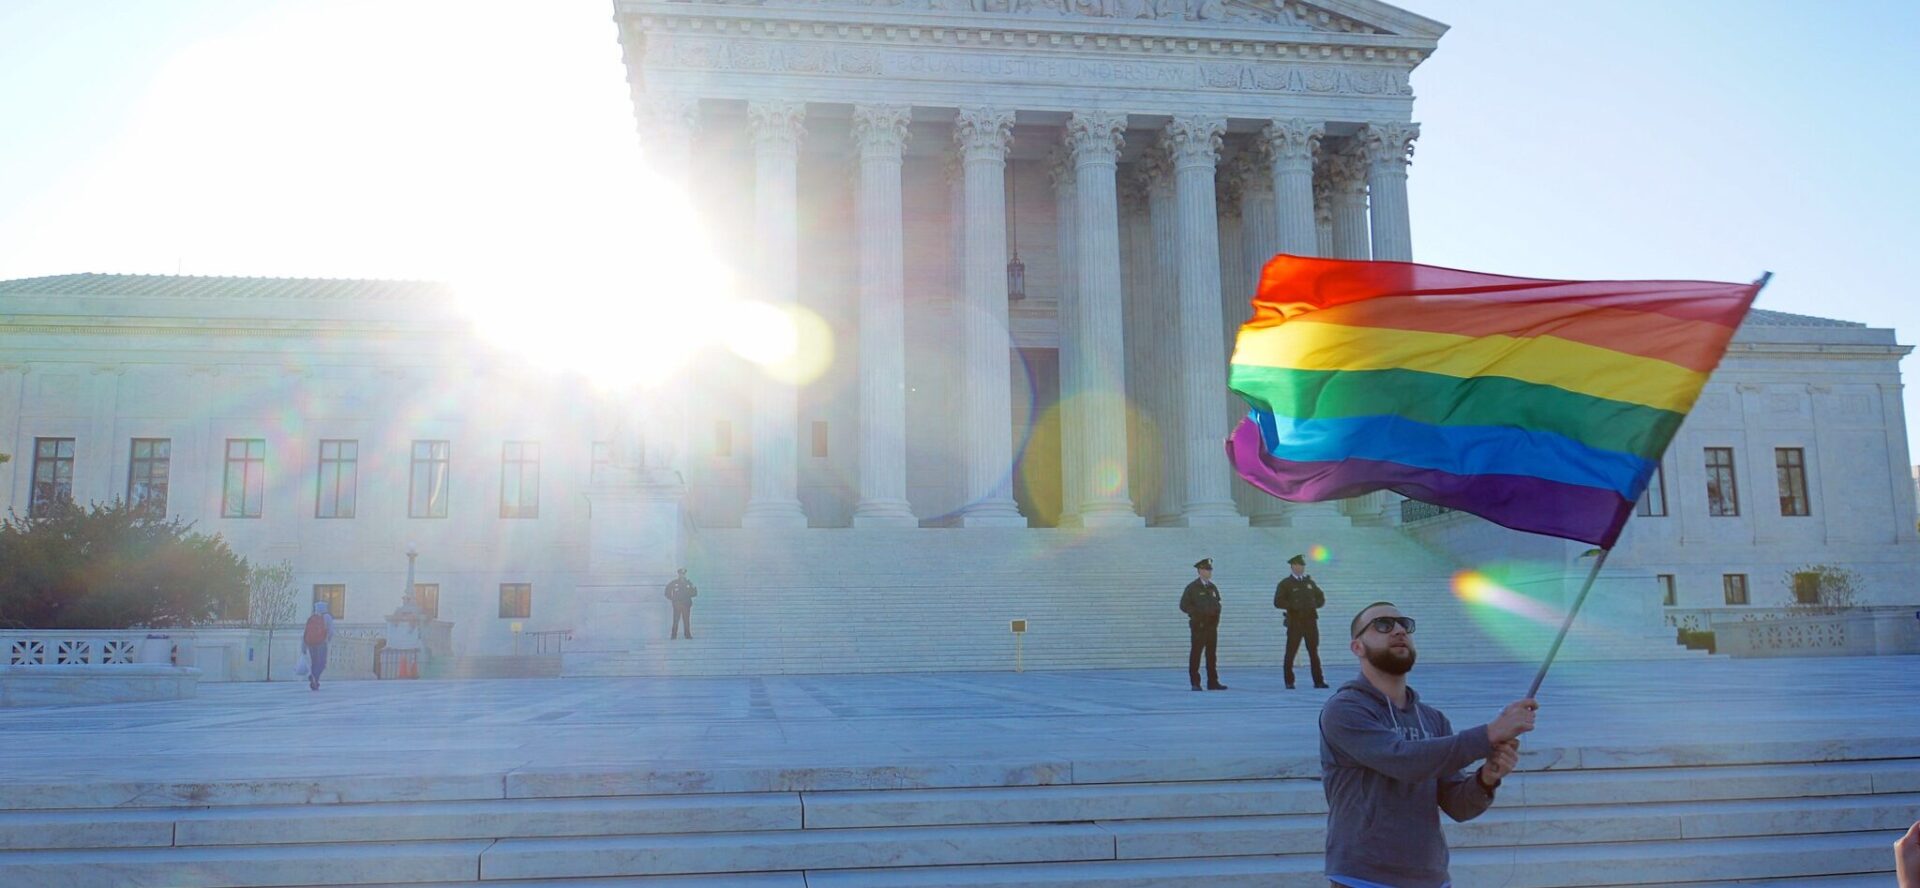 Le Sénat américain a approuvé le projet de loi sur le respect du mariage, 20 novembre 2022 | © Ted Eytan/Flickr/CC BY-SA 2.0